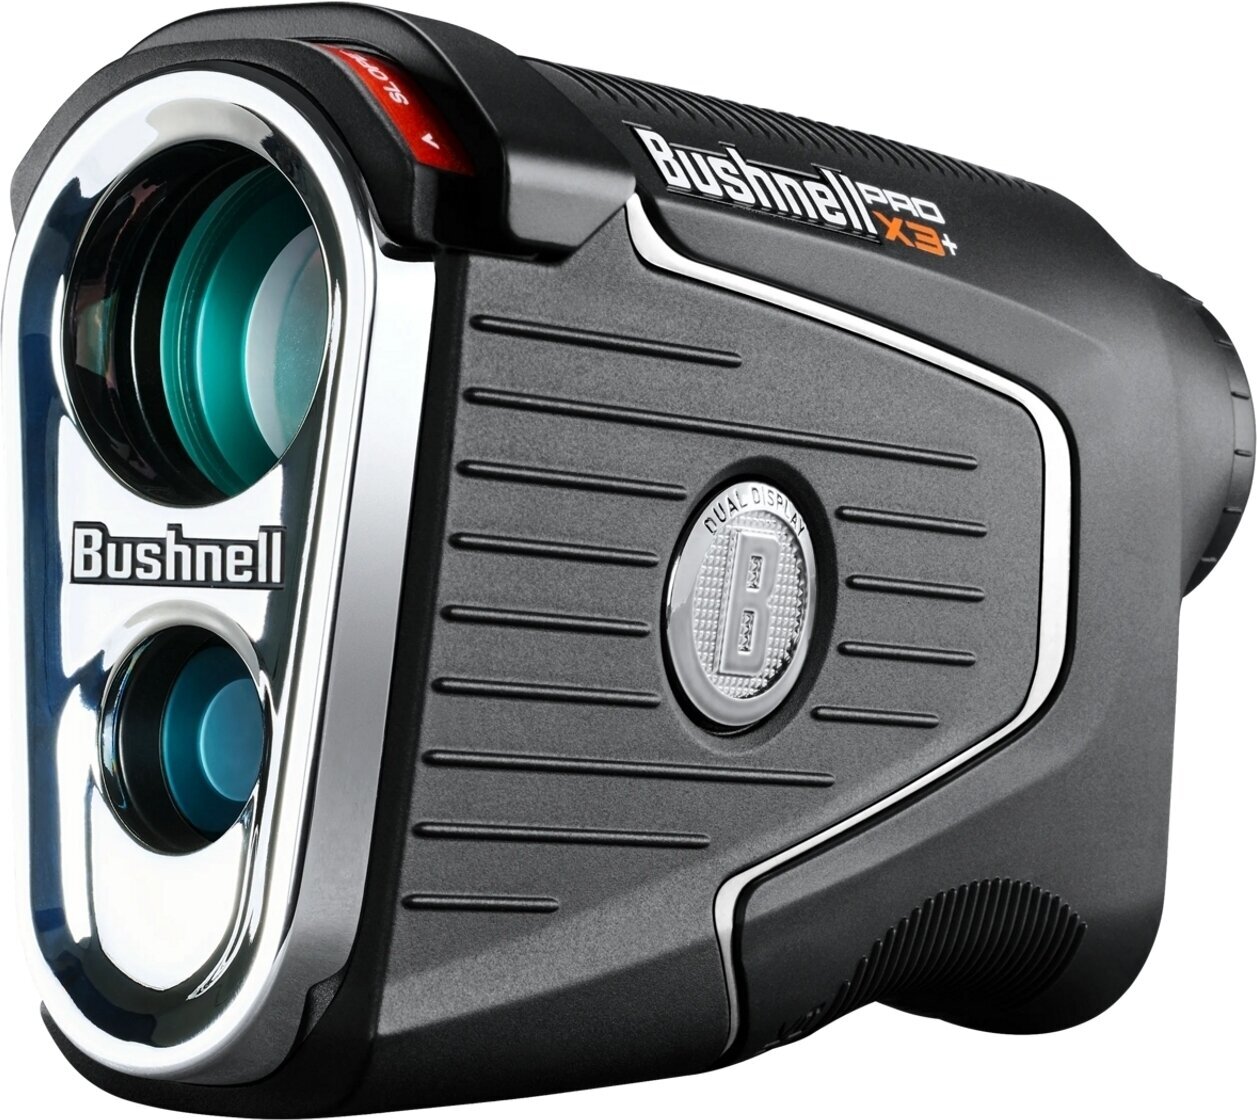 Laser afstandsmeter Bushnell Pro X3 Plus Laser afstandsmeter